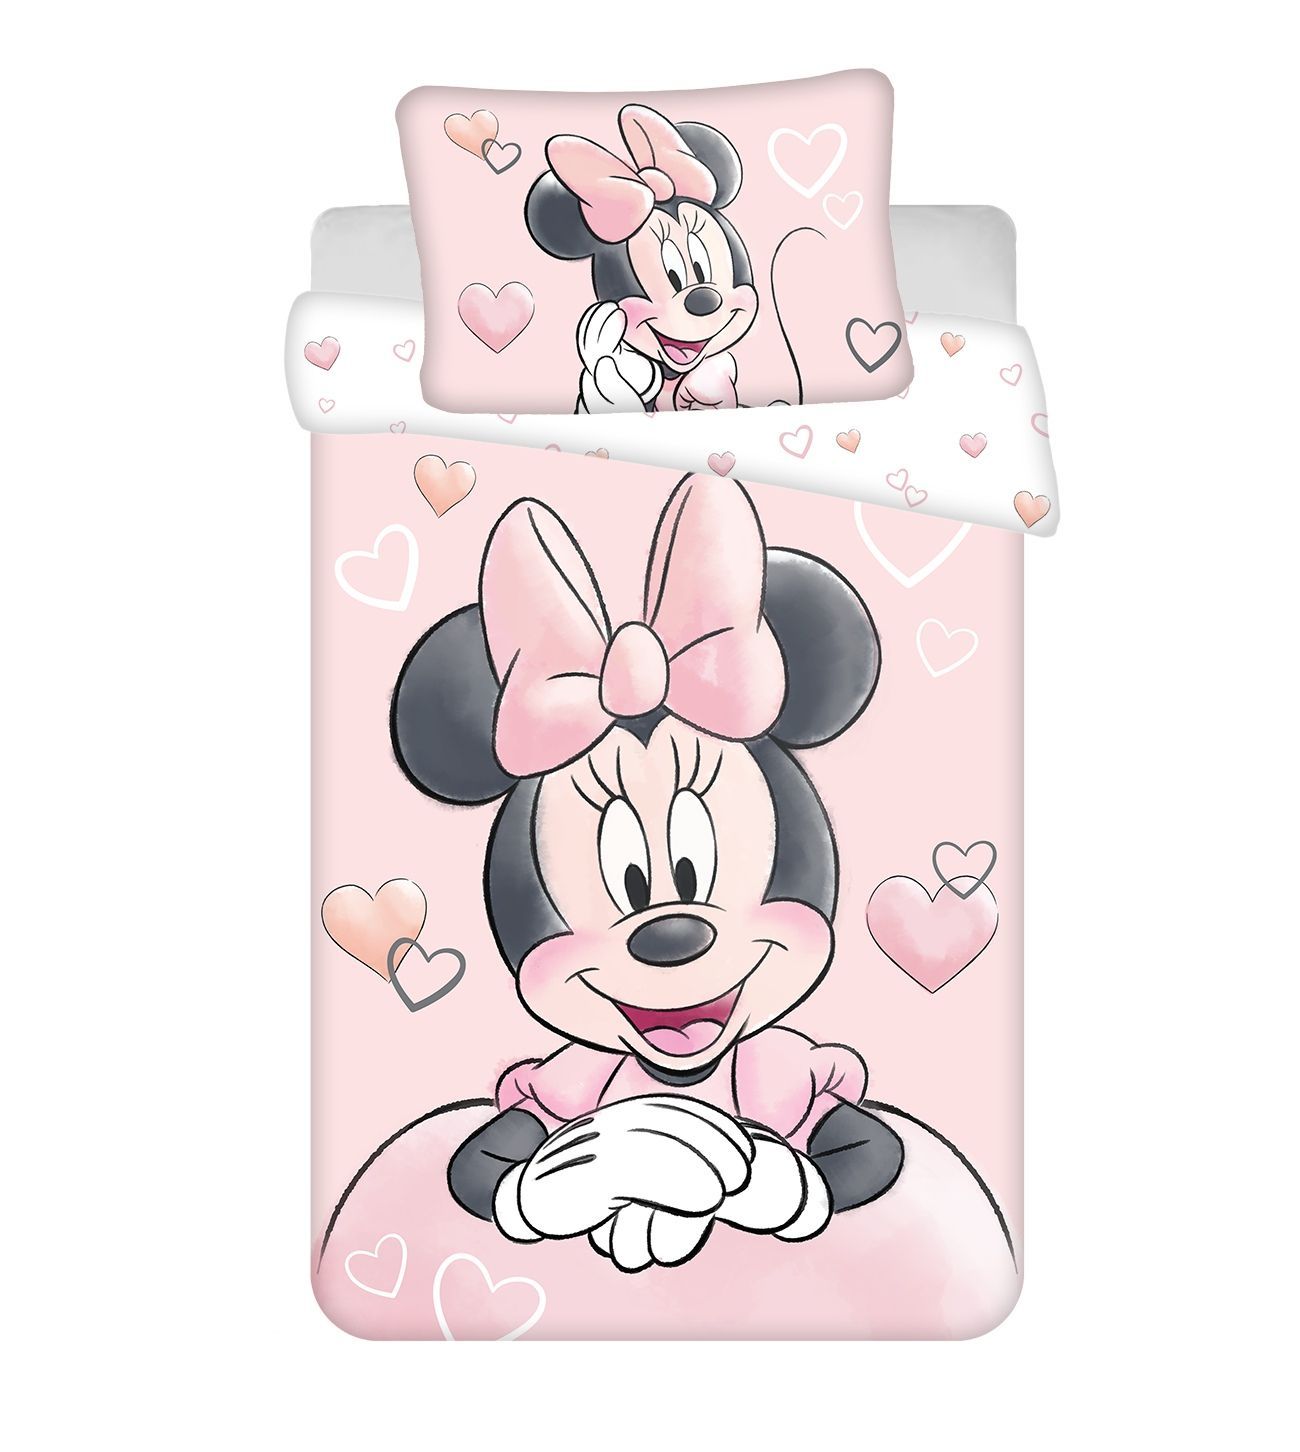 Disney povlečení do postýlky Minnie Powder pink baby Jerry Fabrics